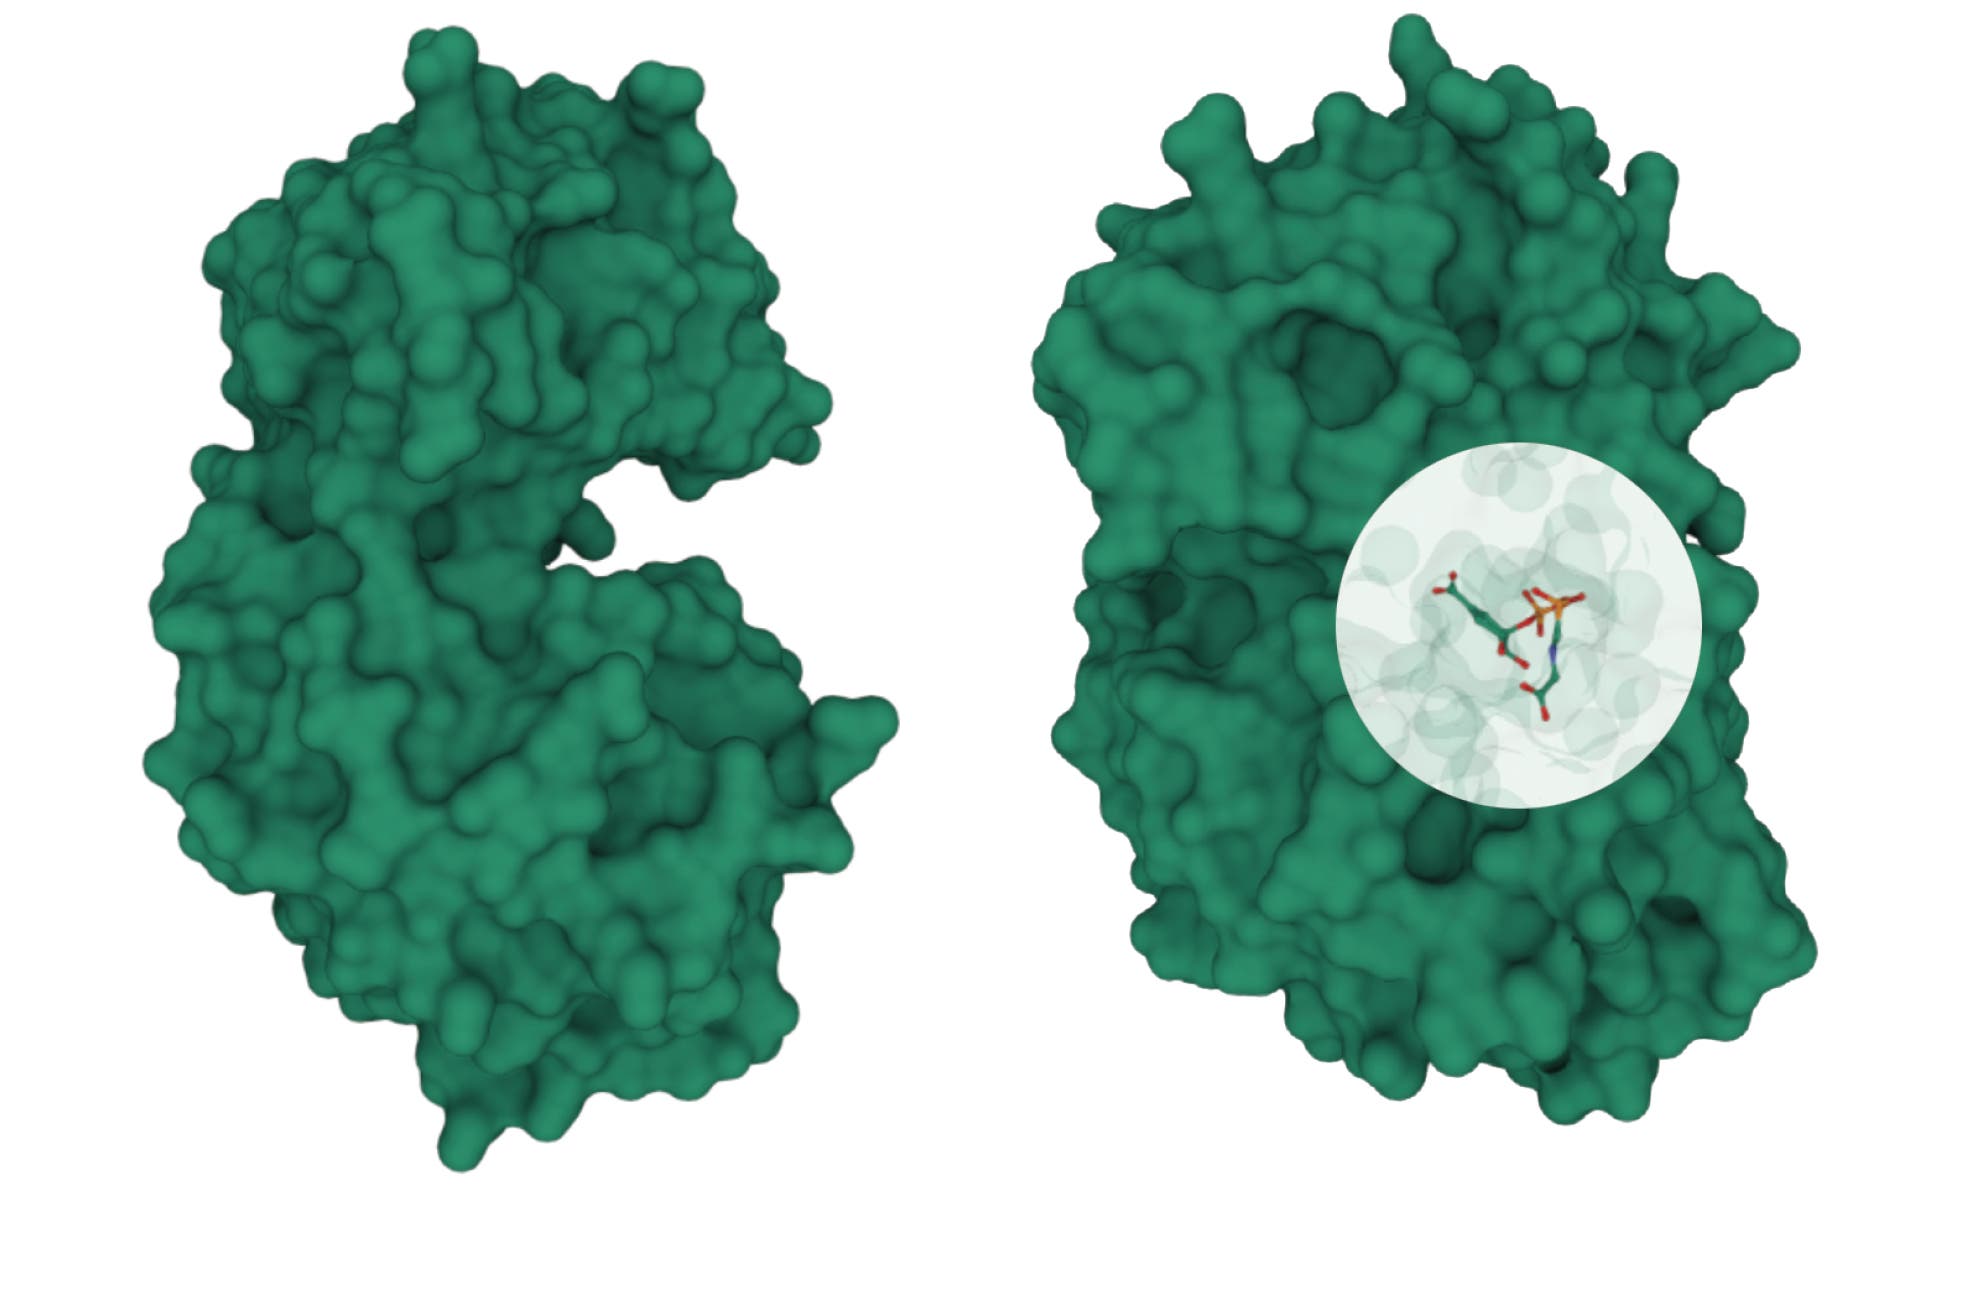 Grafik: Zwei Zustände des Enzyms EPSP-Synthase: bevor und nach Anheftung des Substrats Shikimat­3­Phosphat